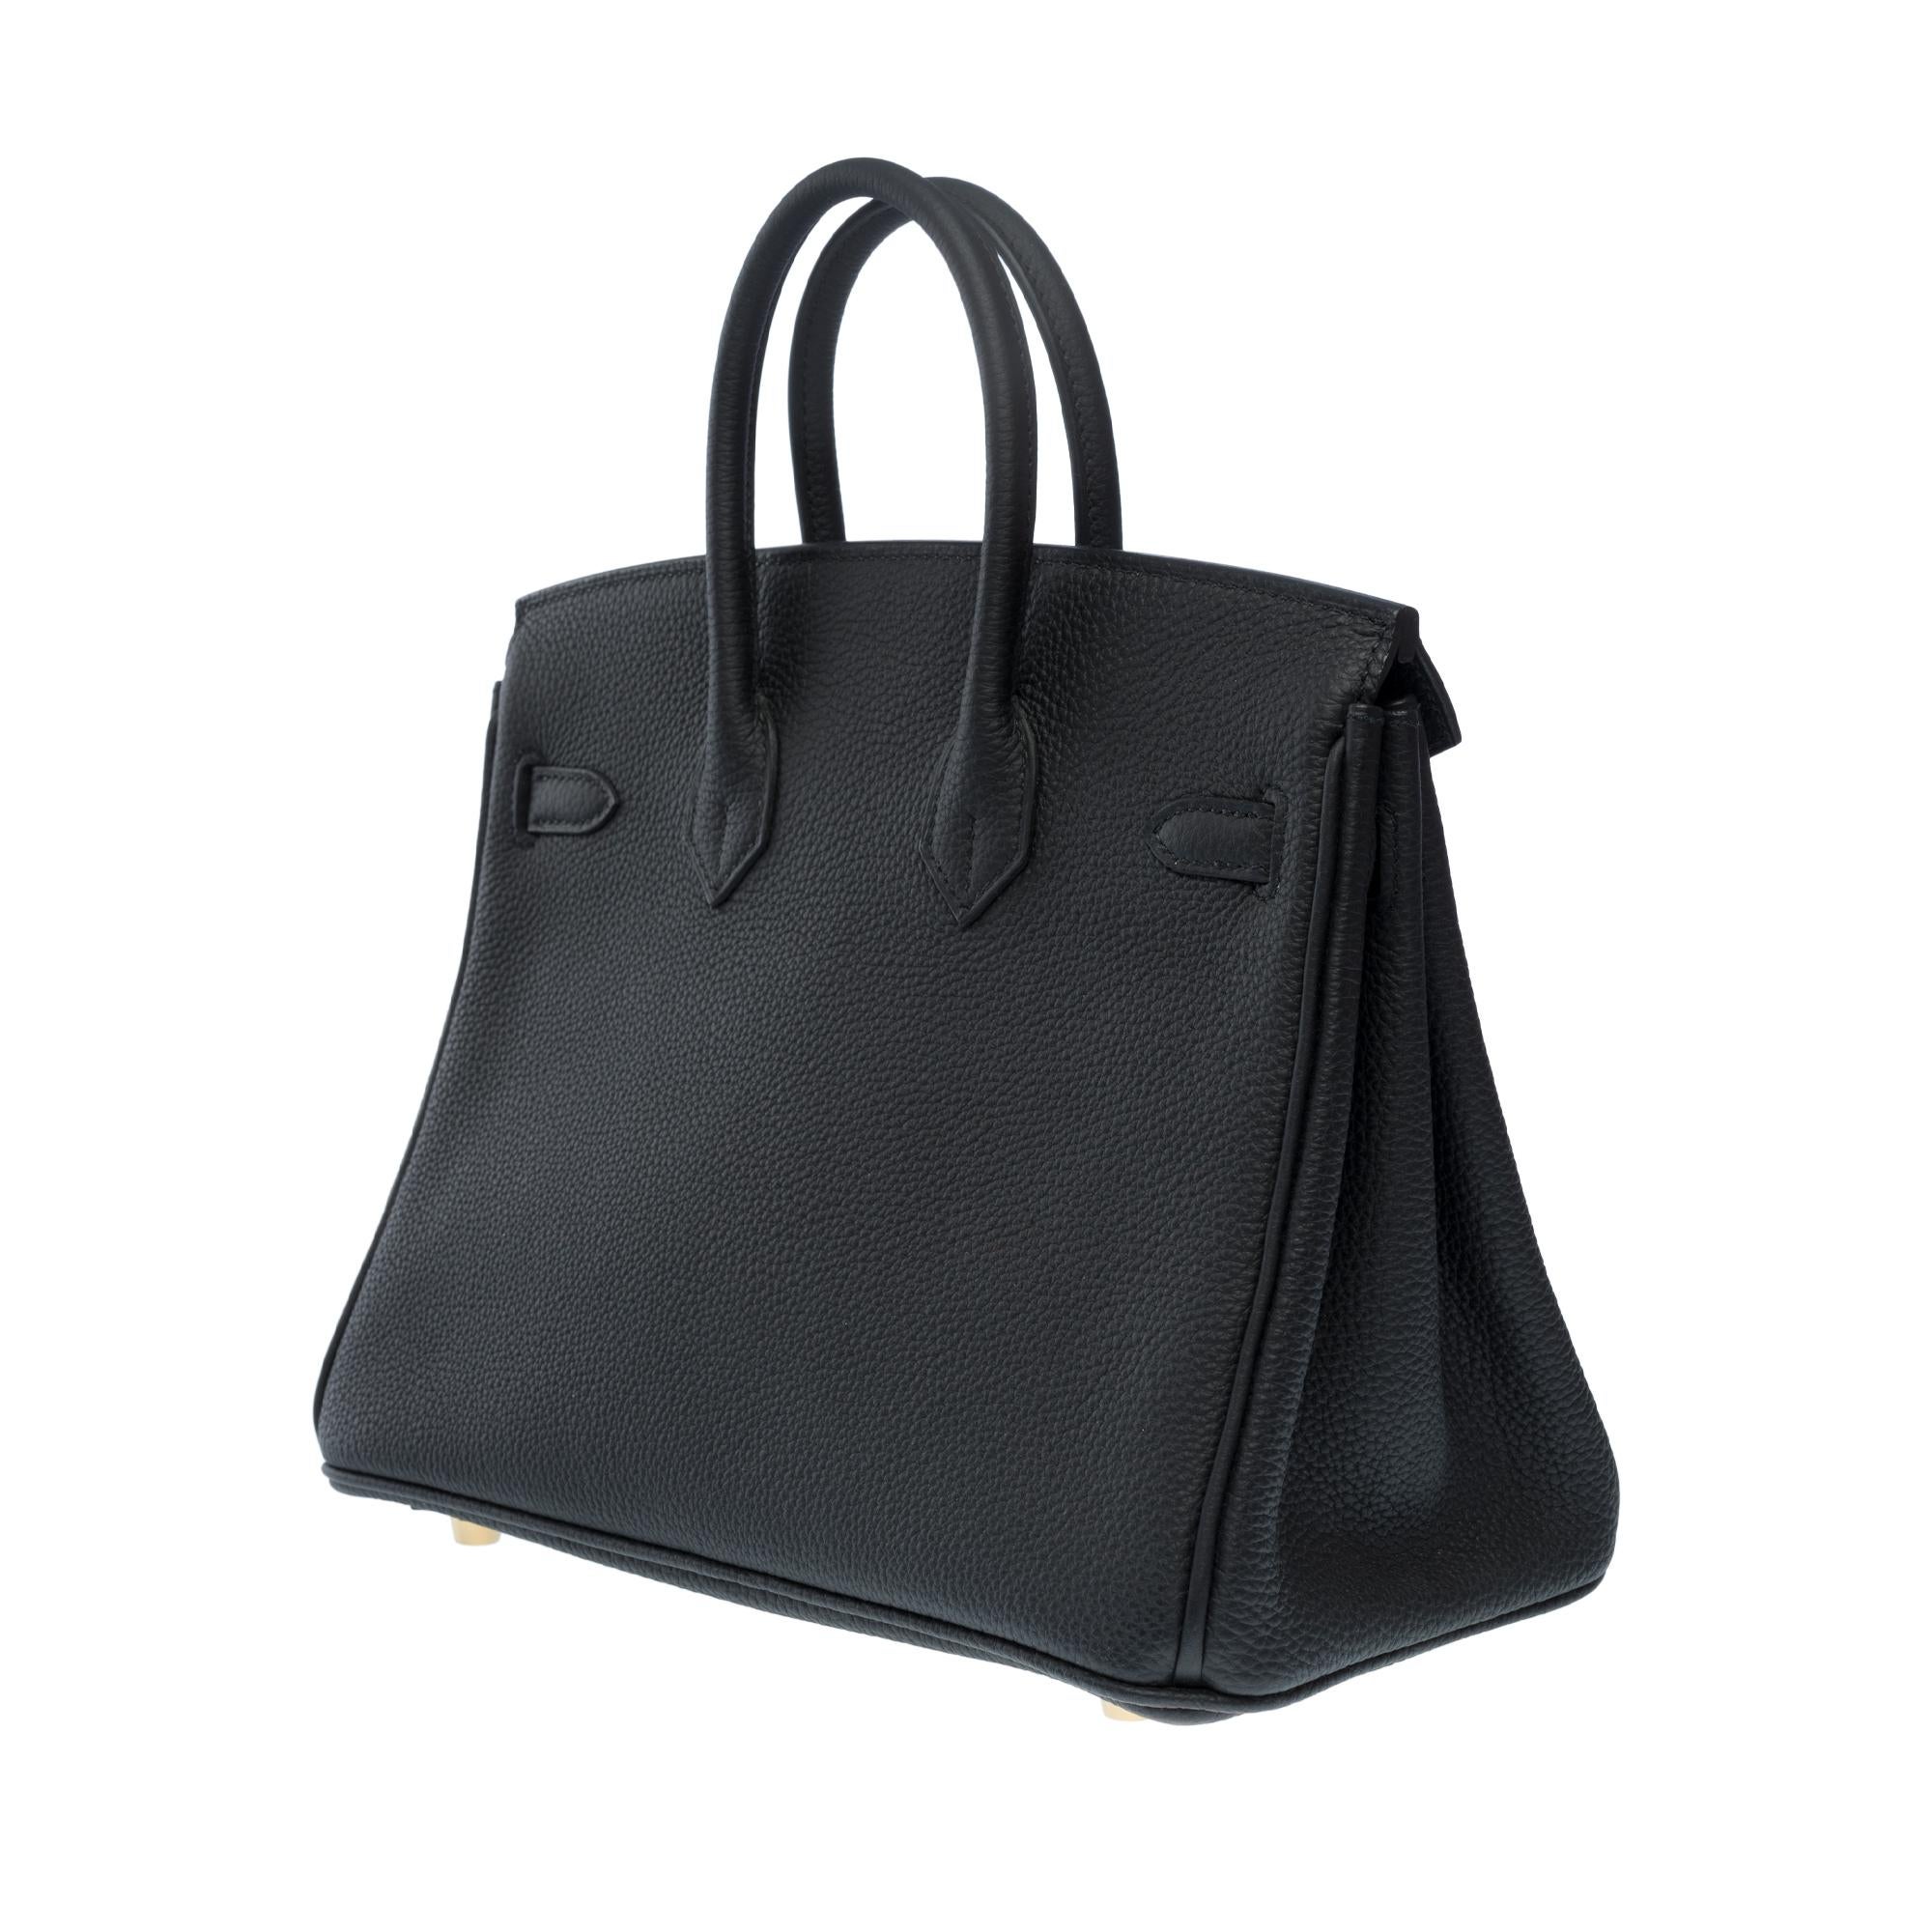 Amazing Hermes Birkin 25 handbag inBlack Togo leather, GHW For Sale 2